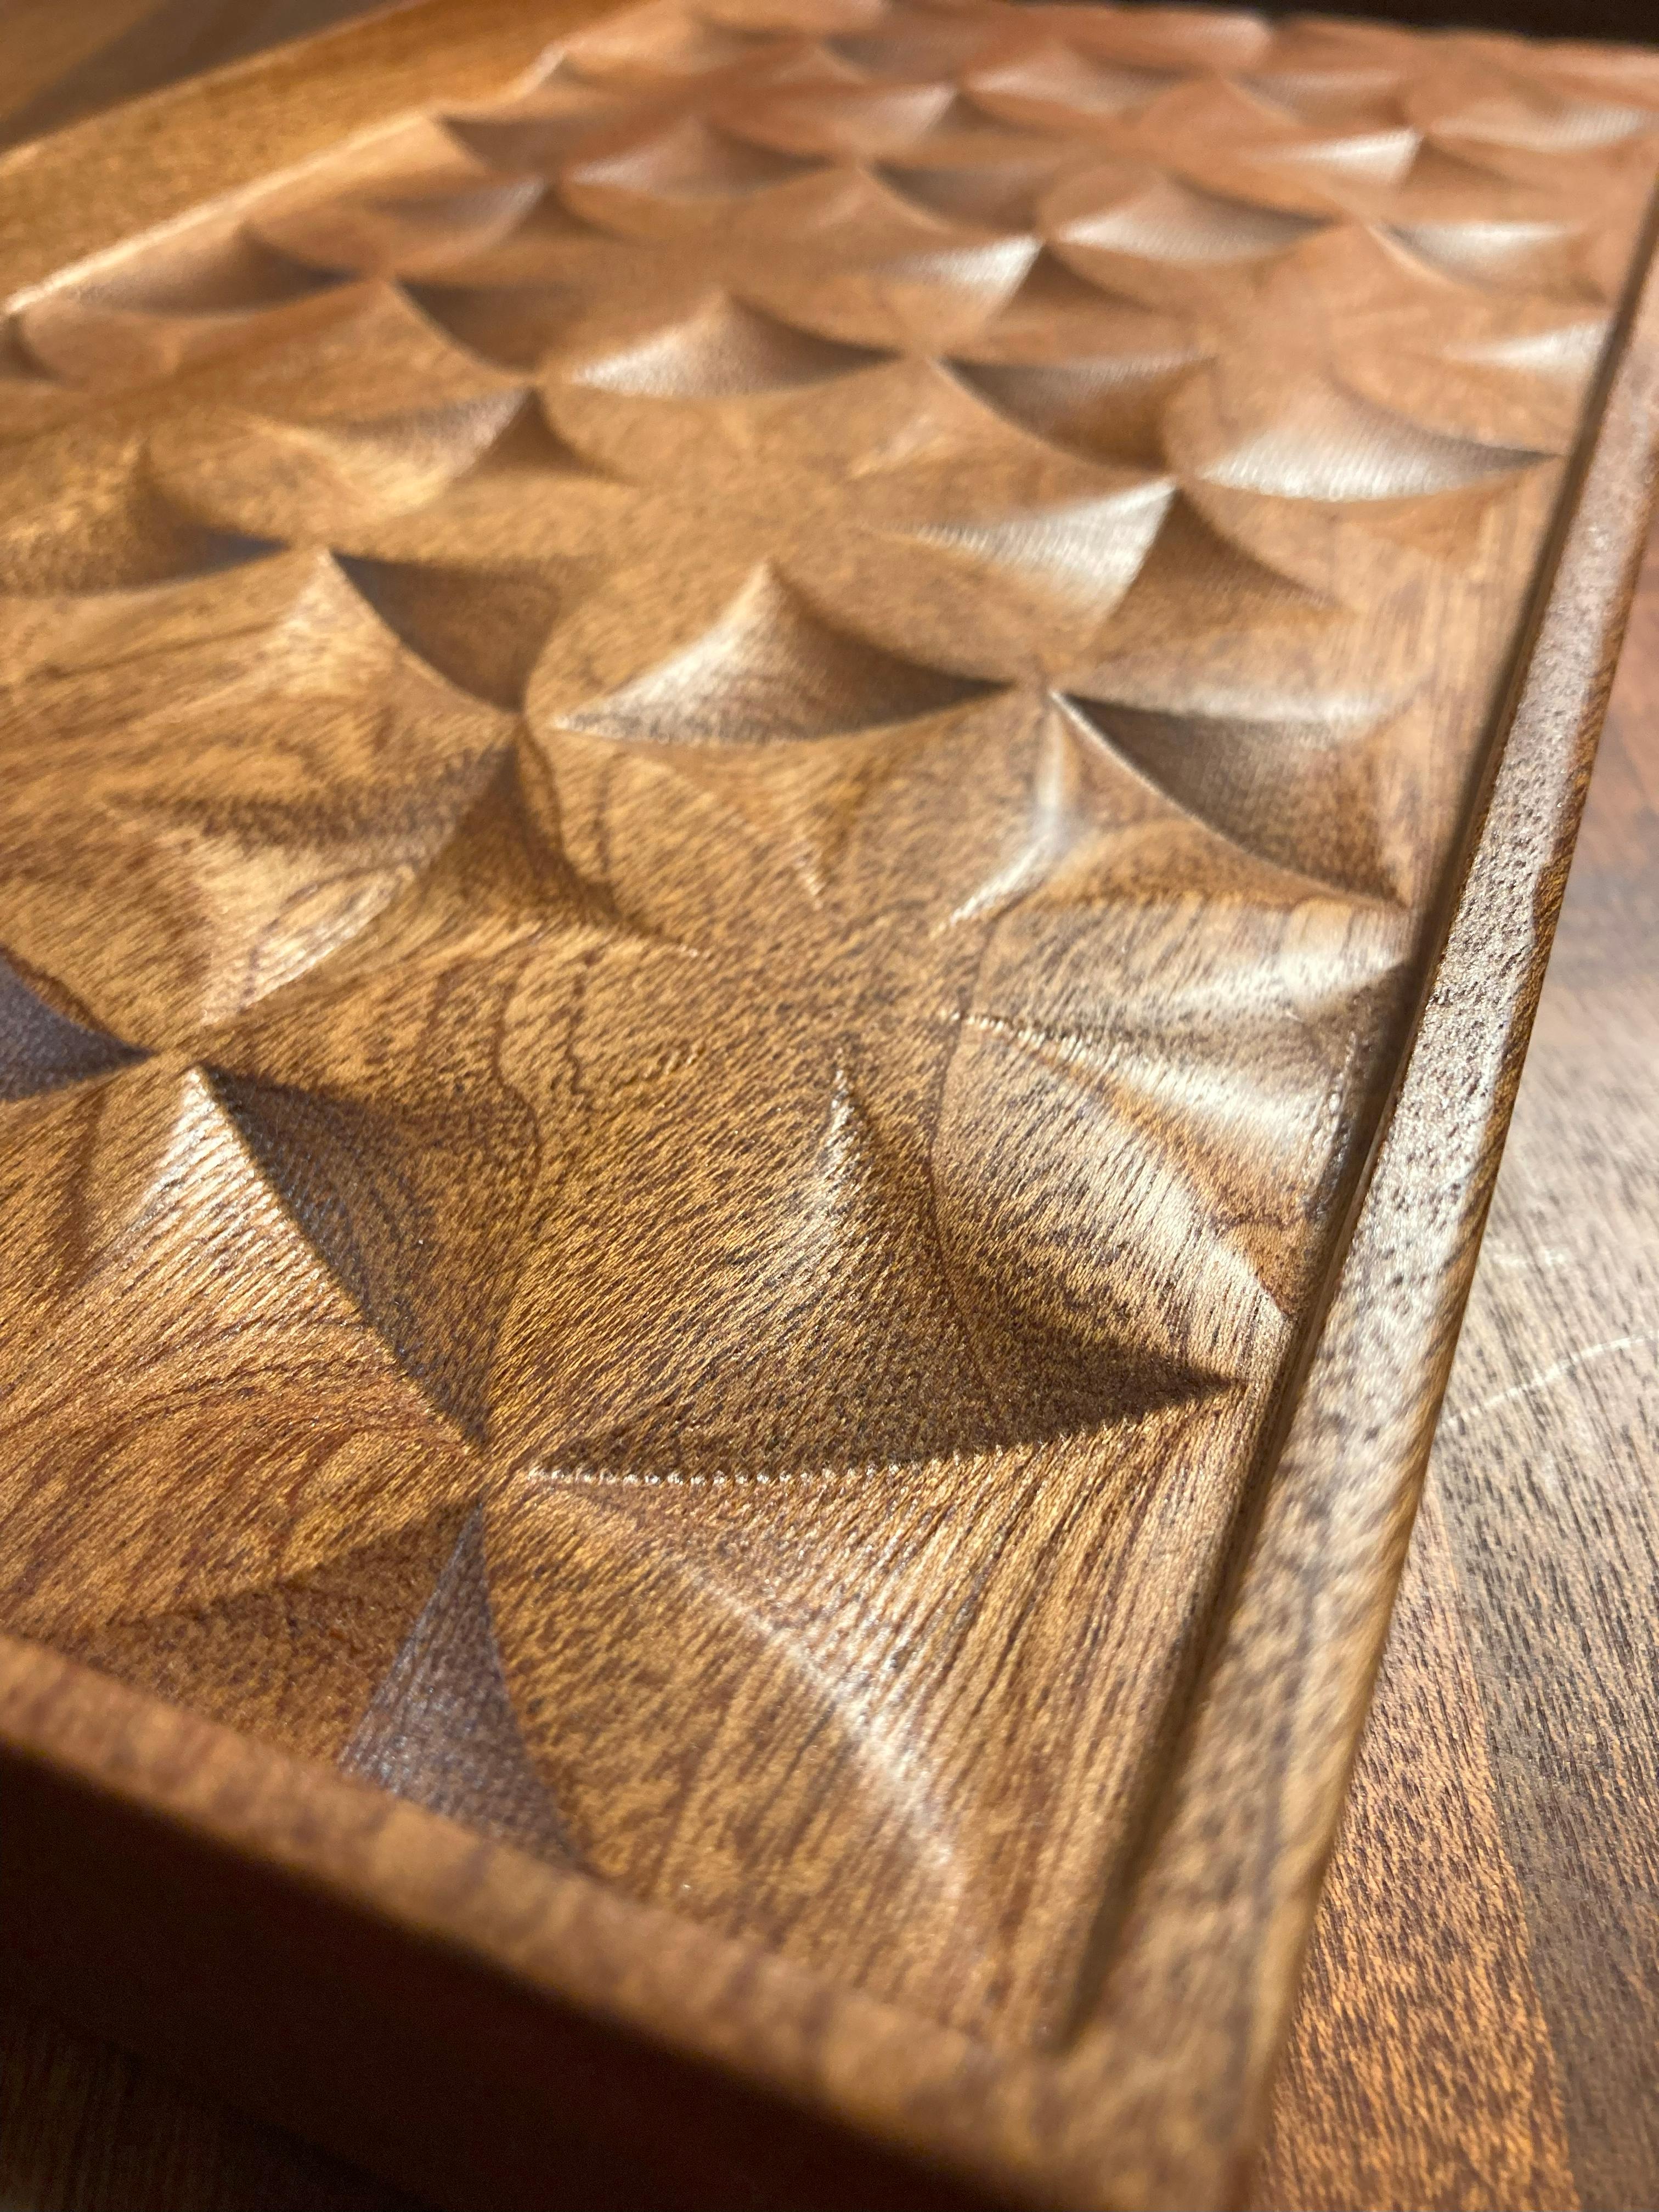 Dieses stilvolle, handwerklich gefertigte Tablett aus Sapele-Holz ist ein Ablagefach für Haus, Büro, Kommode oder Küche.  ein Sammlerstück unter den Einrichtern.  Für Zuhause, das Büro, die Kommode oder die Küche aus massivem, gold-rotem